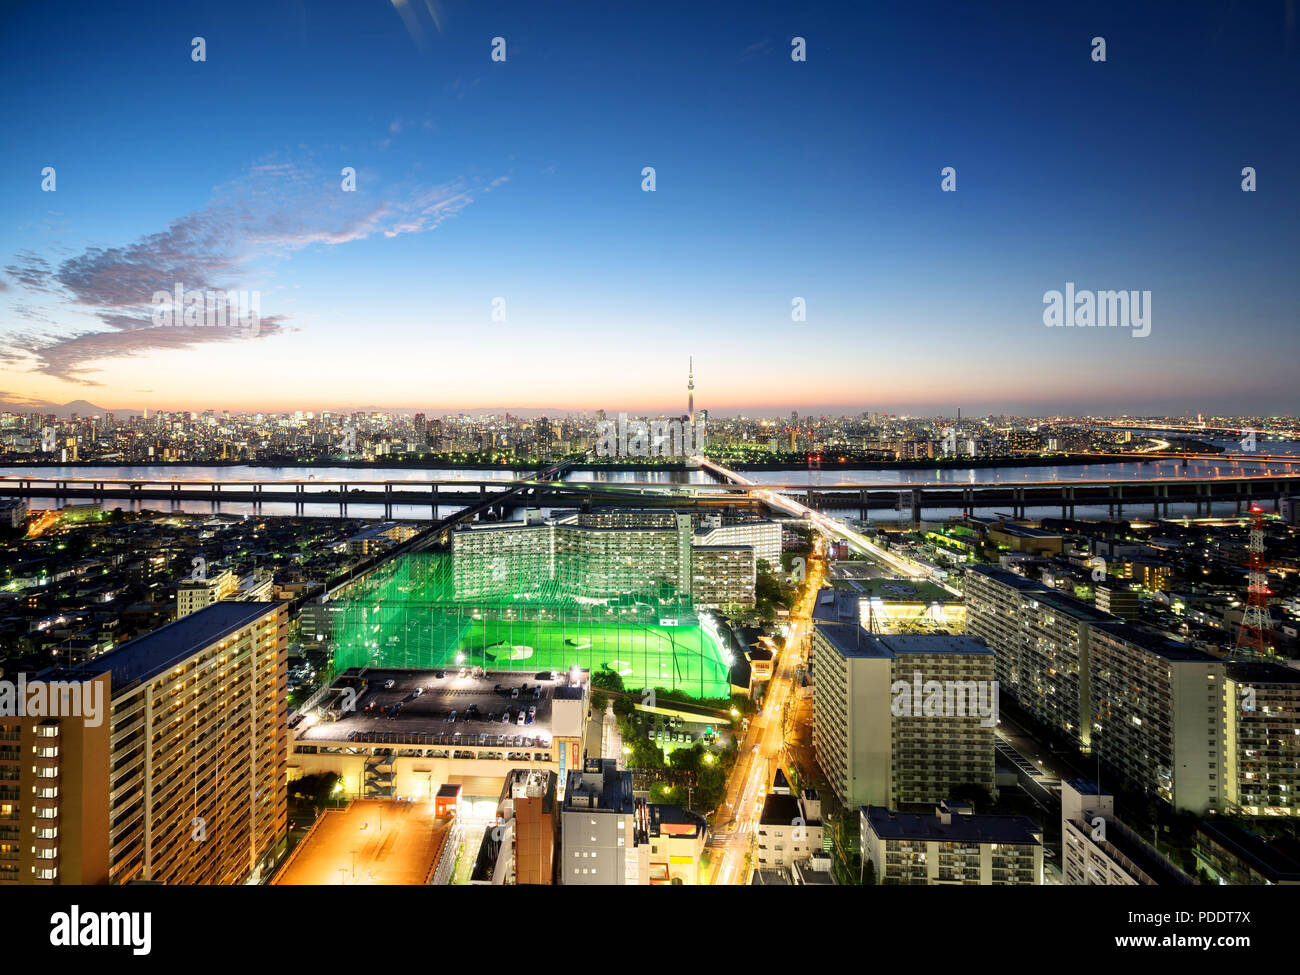 Wirtschaft und Kultur Konzept für Immobilien und Corporate Bau - Panoramablick auf die moderne Skyline der Stadt aus der Vogelperspektive aerial Nacht Ansicht mit Tokio skytree Stockfoto